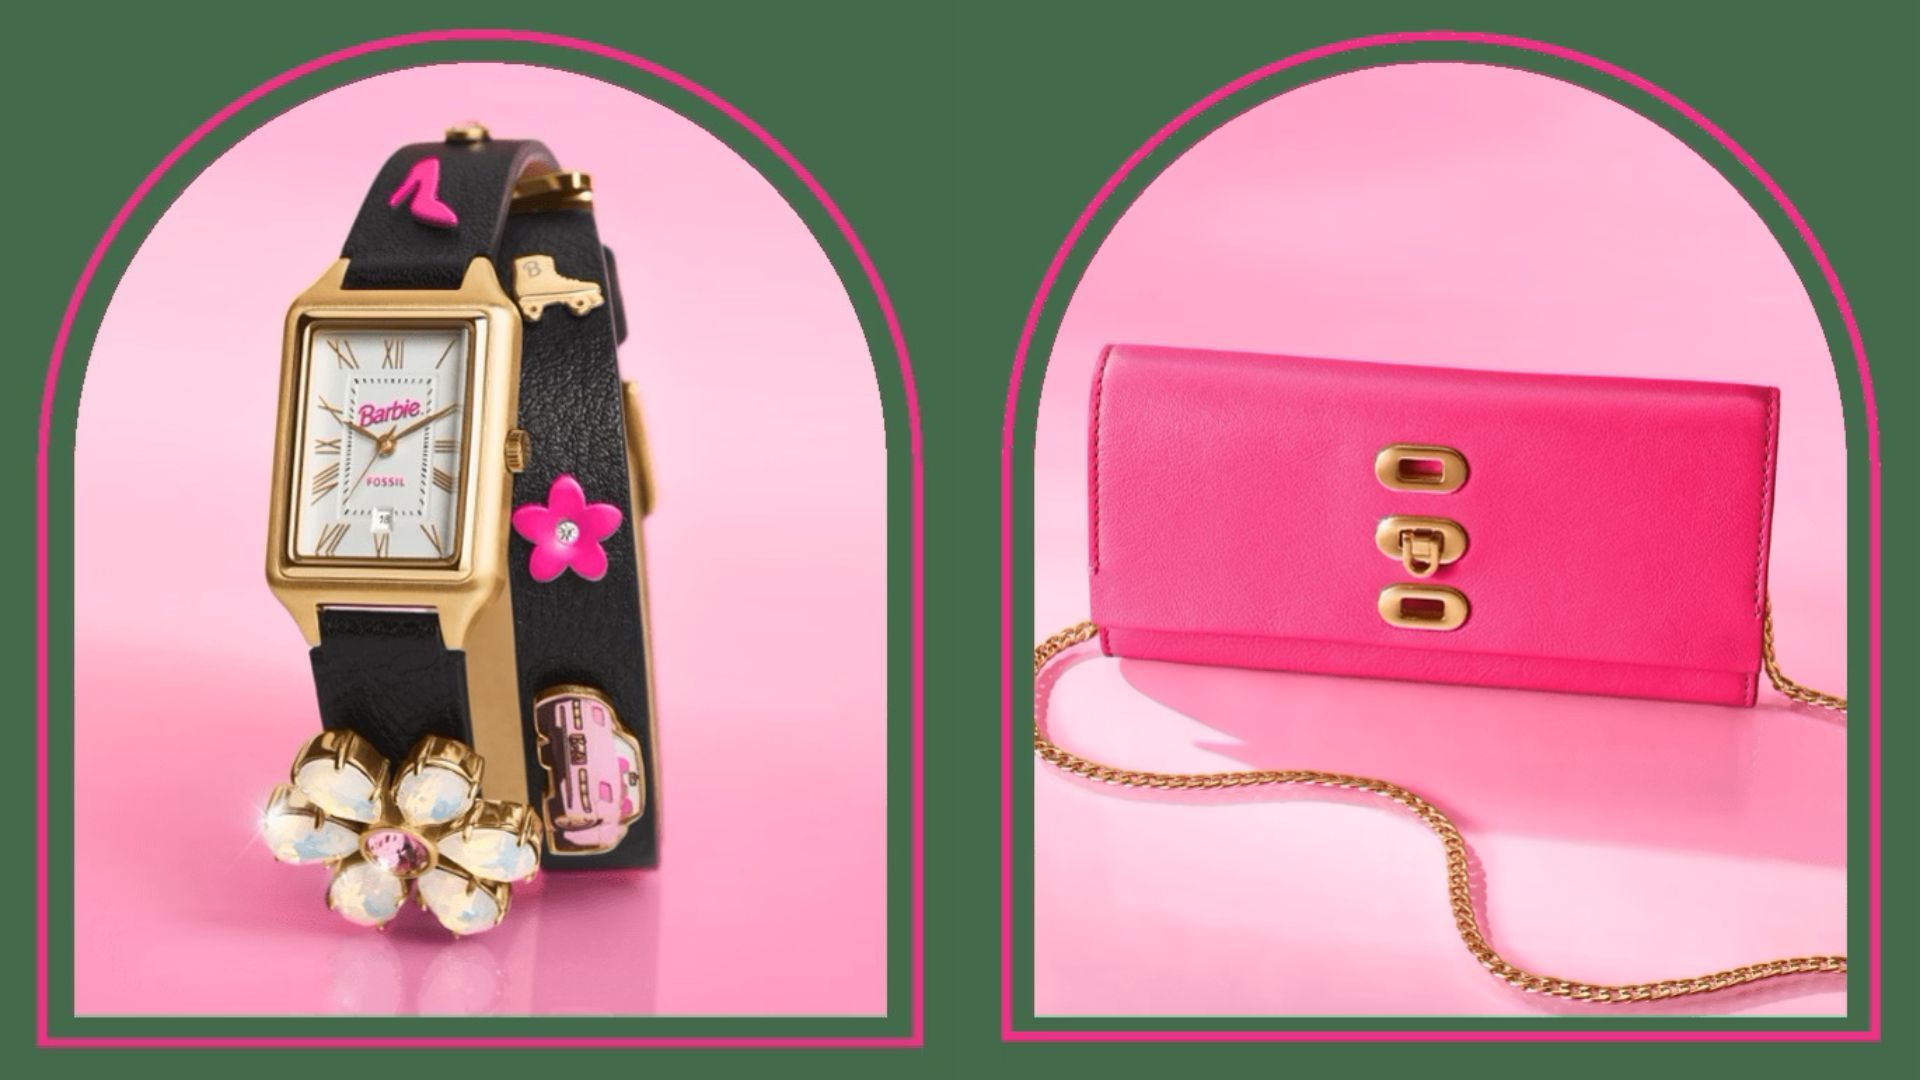 Barbie x Aldo Collection: Shop the Best Pieces